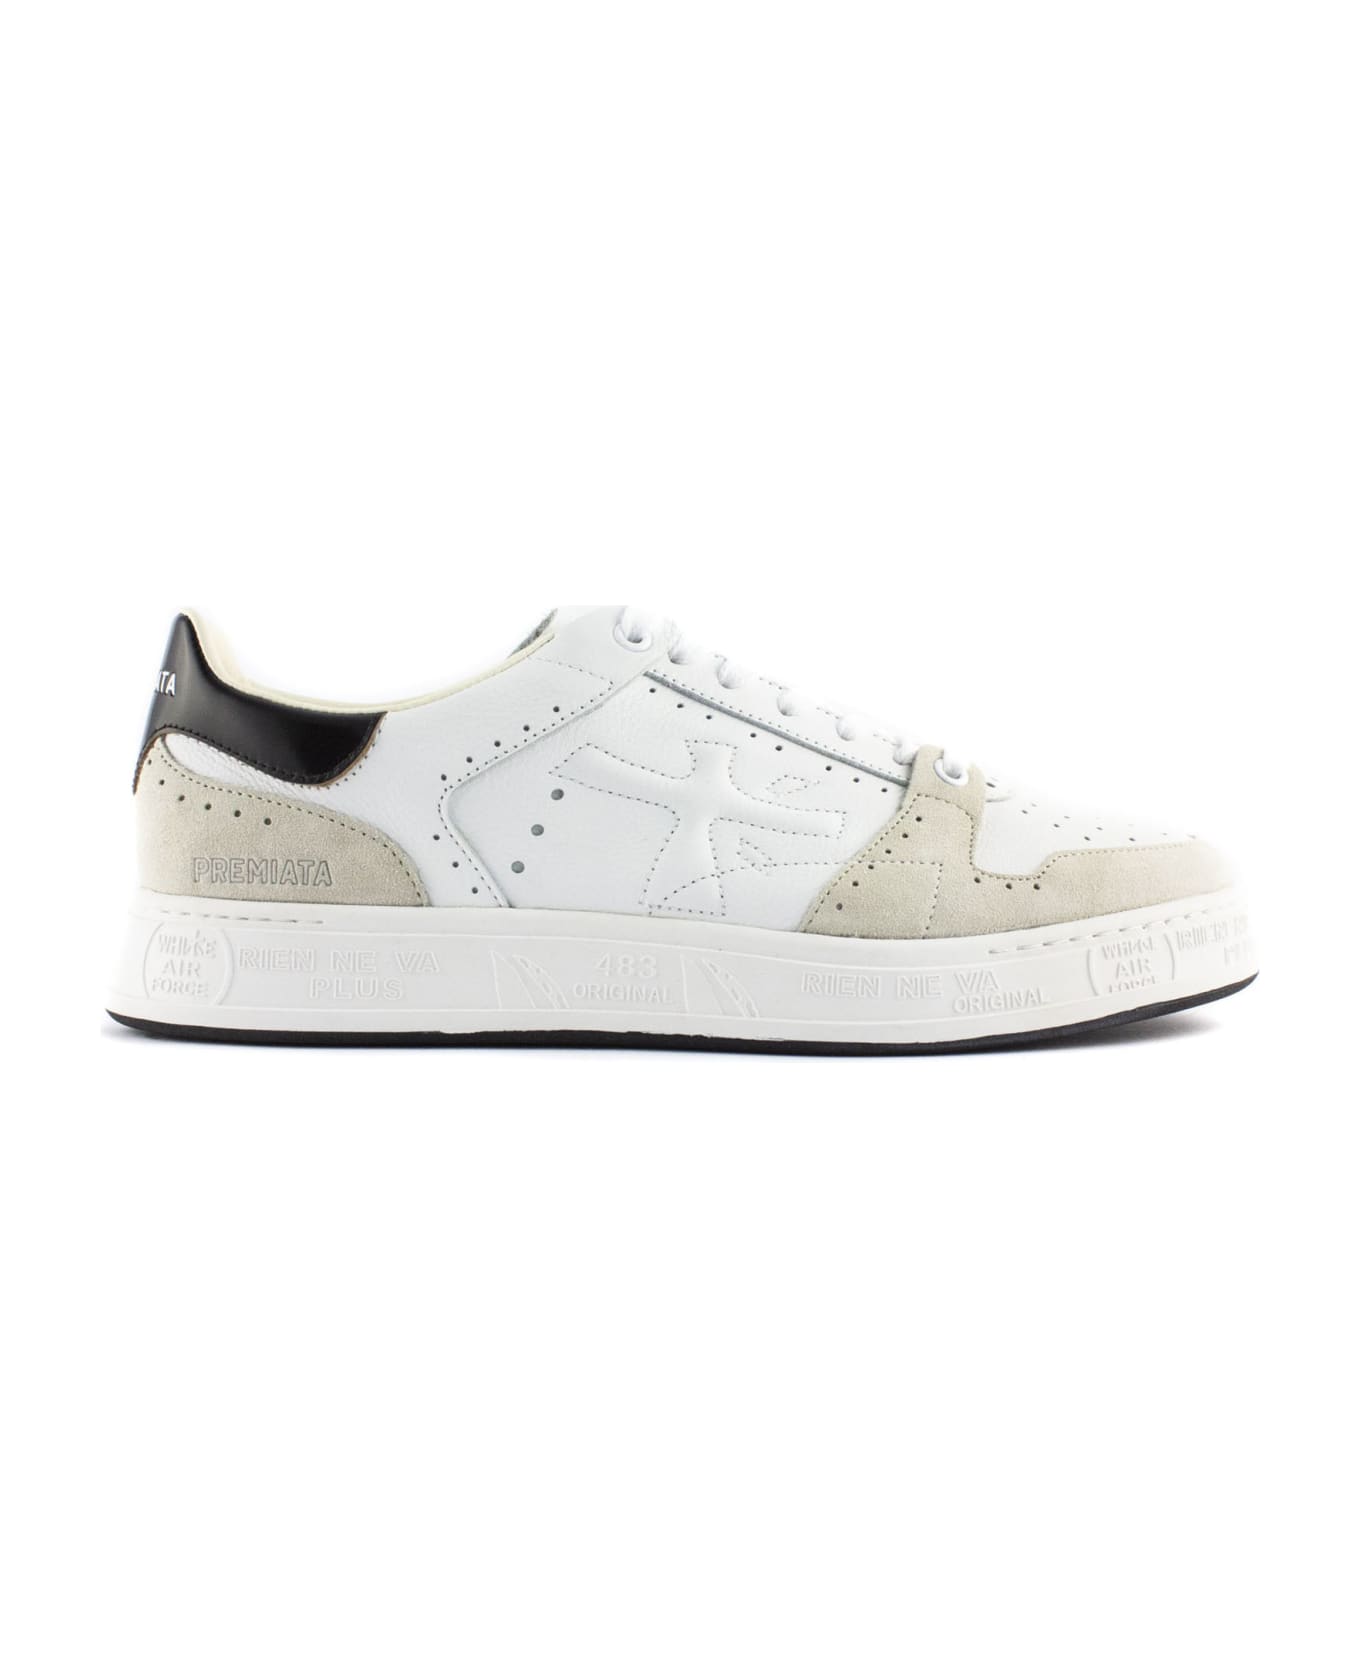 Premiata Quinn Sneakers In White Leather - Bianco/nero